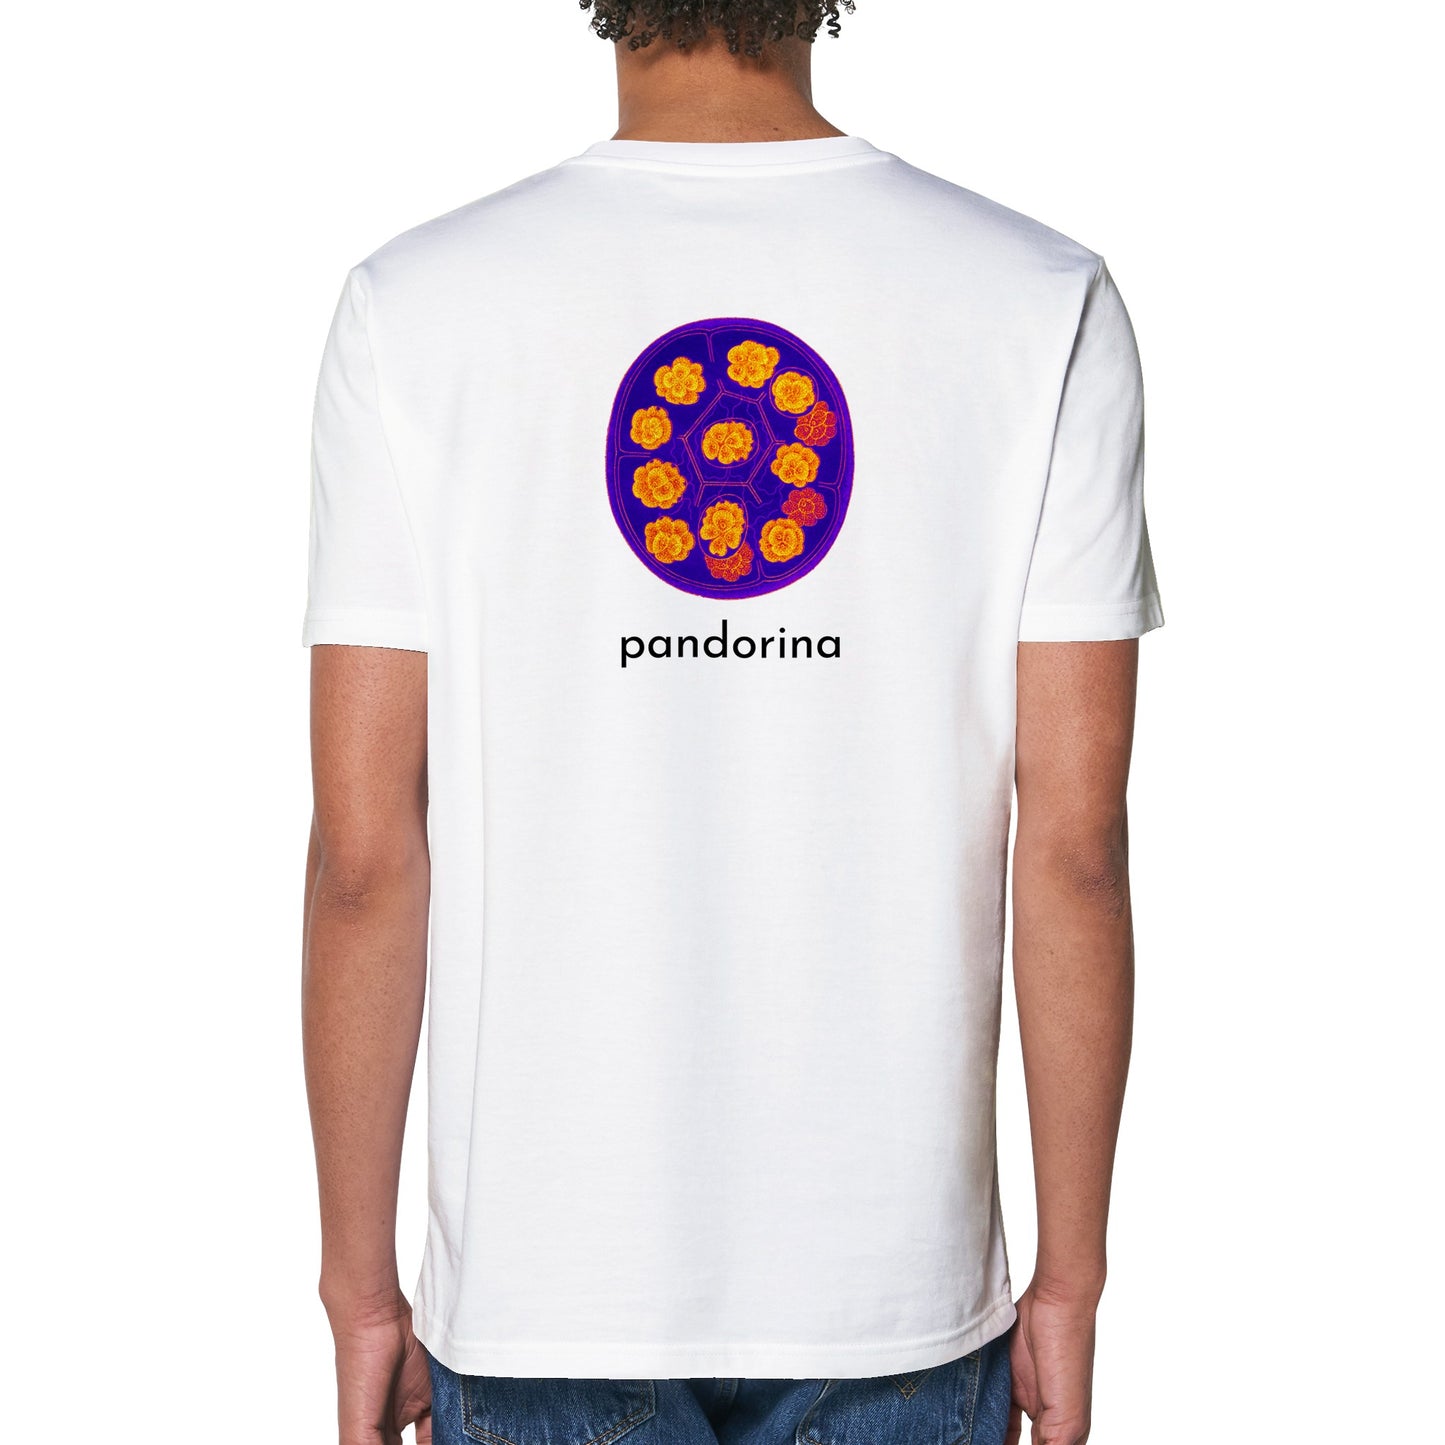 Pandorina T-Shirt